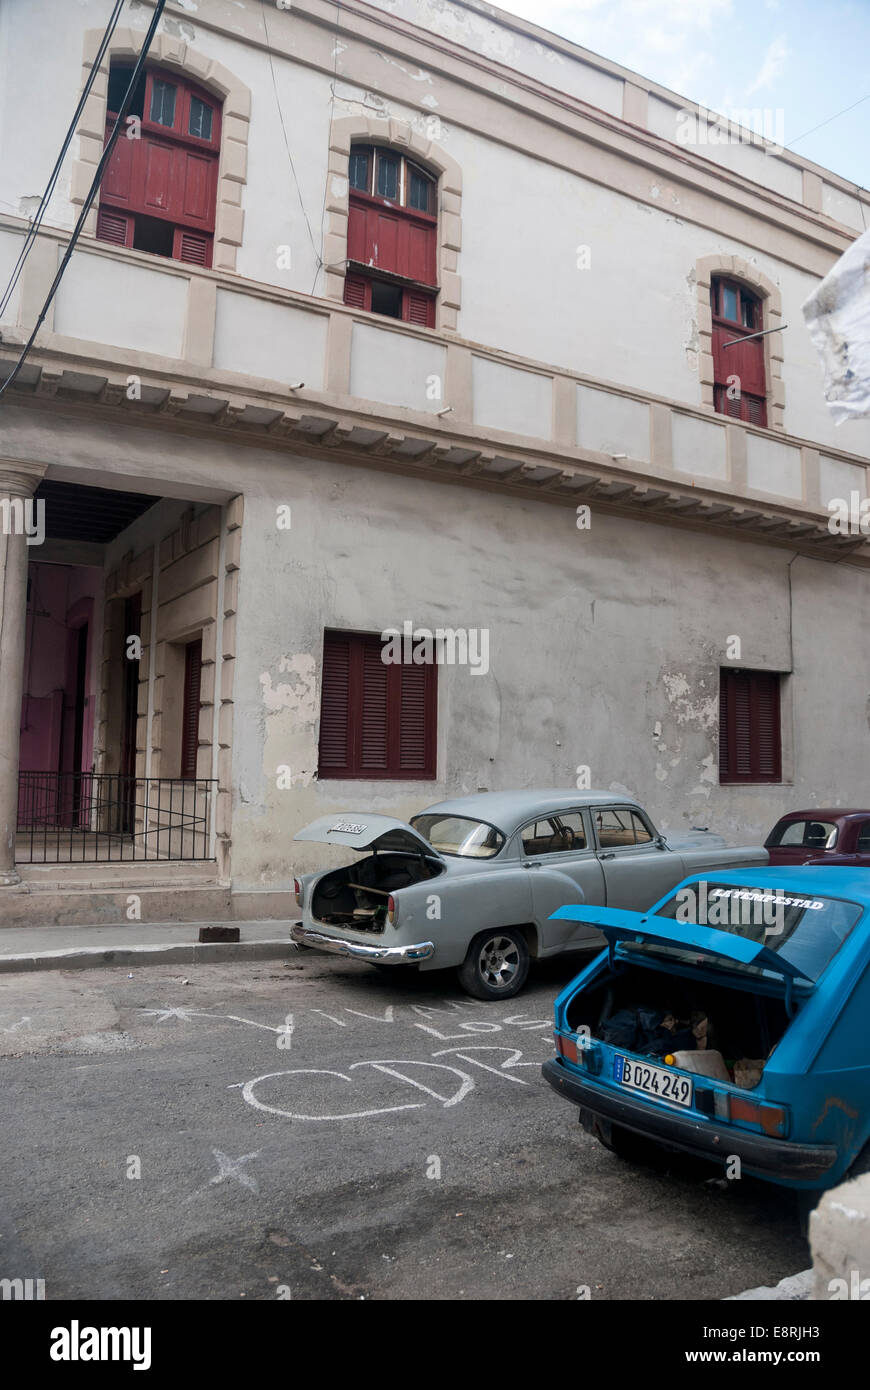 Eine typische Back Street Szene in einem zentralen Viertel von Havanna. Alte Autos mit dem Rüssel öffnen wartet auf Reparaturen. Stockfoto